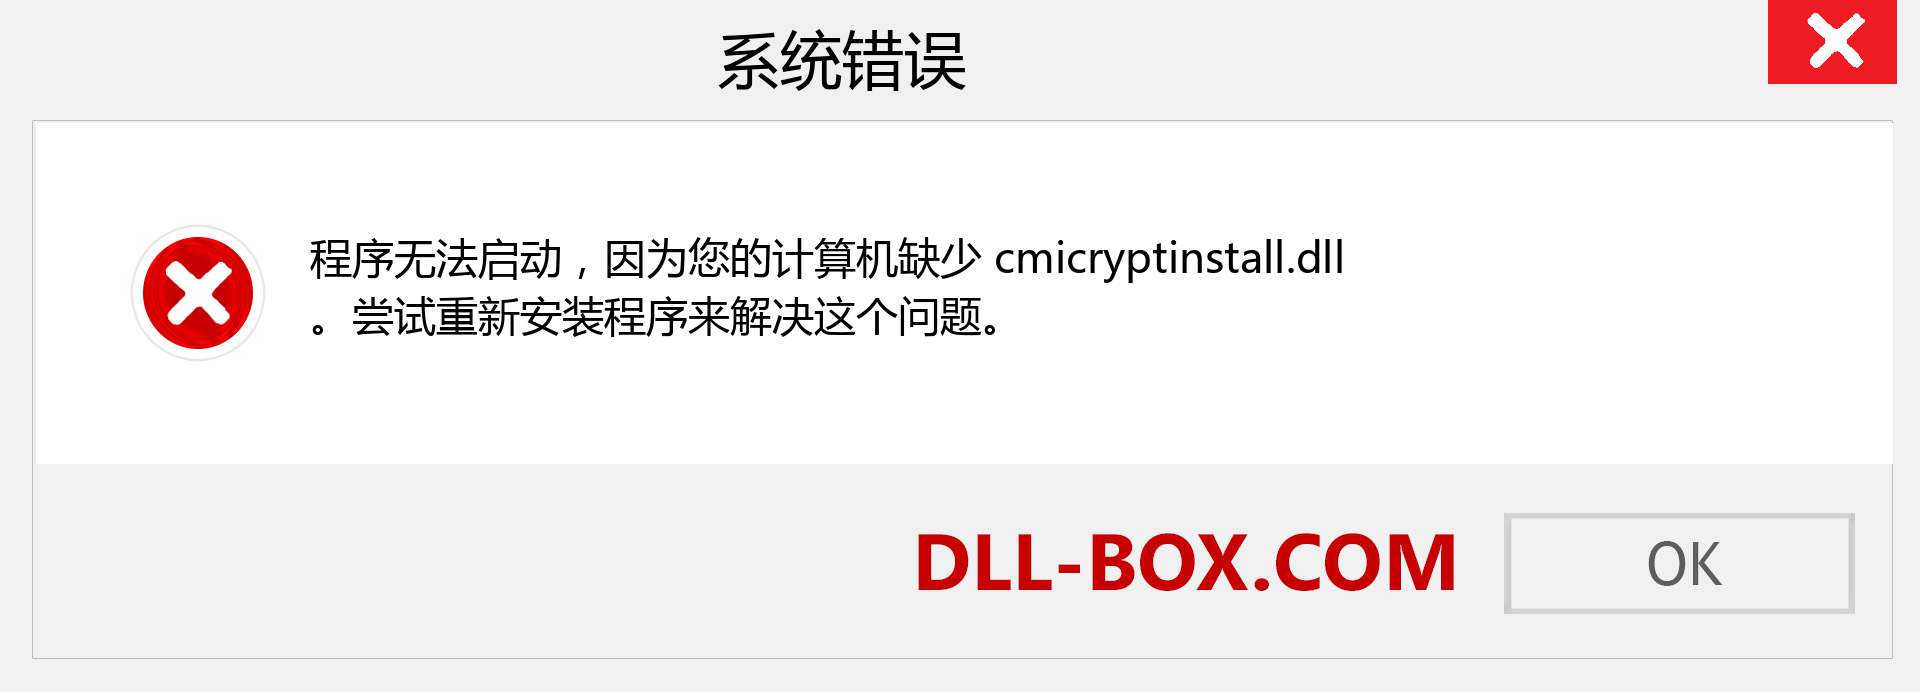 cmicryptinstall.dll 文件丢失？。 适用于 Windows 7、8、10 的下载 - 修复 Windows、照片、图像上的 cmicryptinstall dll 丢失错误